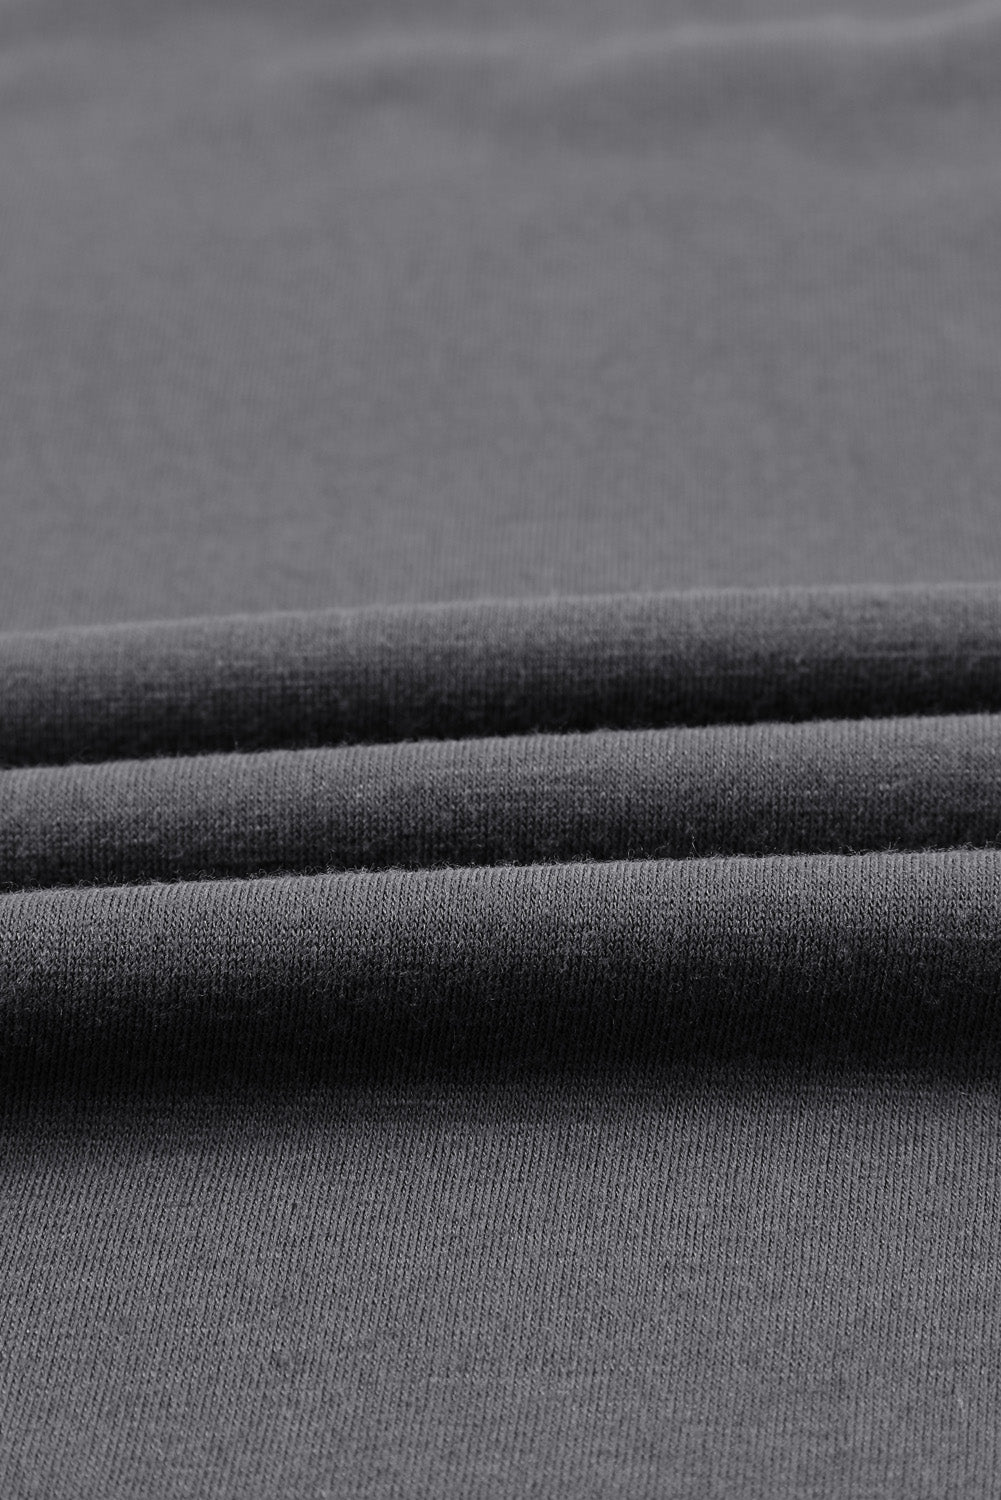 Crna majica bez rukava CHILL s grafičkim printom